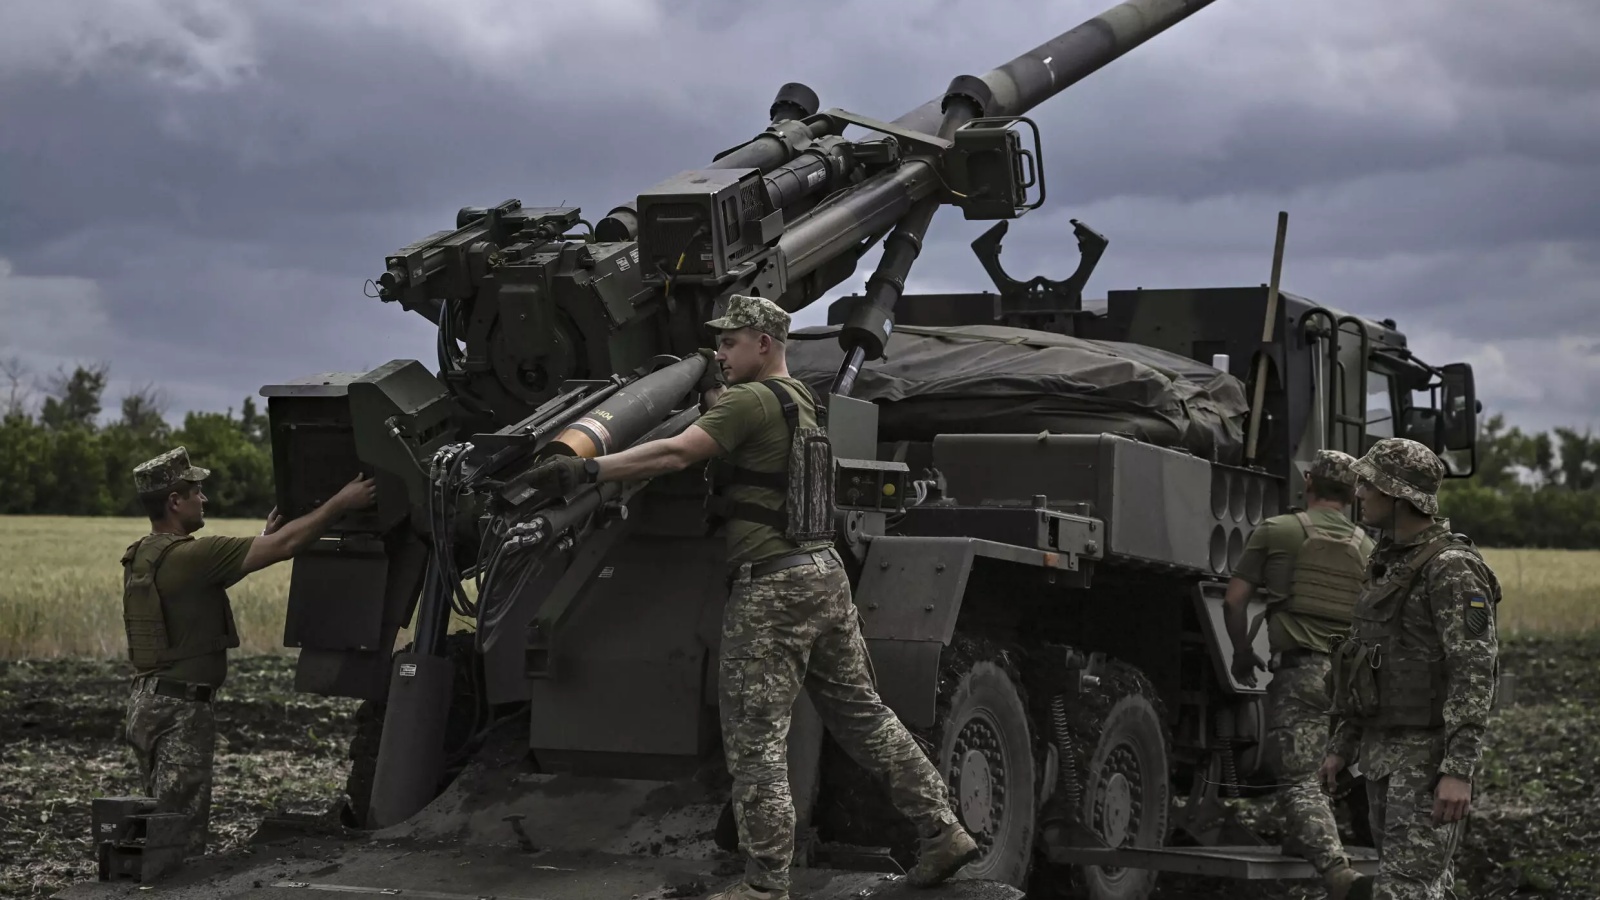 في موقع سري على خط المواجهة في شرق أوكرانيا، أطلق جنود من وحدة مدفعية اللواء 55 ثلاث قذائف من مدفع هاوتزر من طراز قيصر